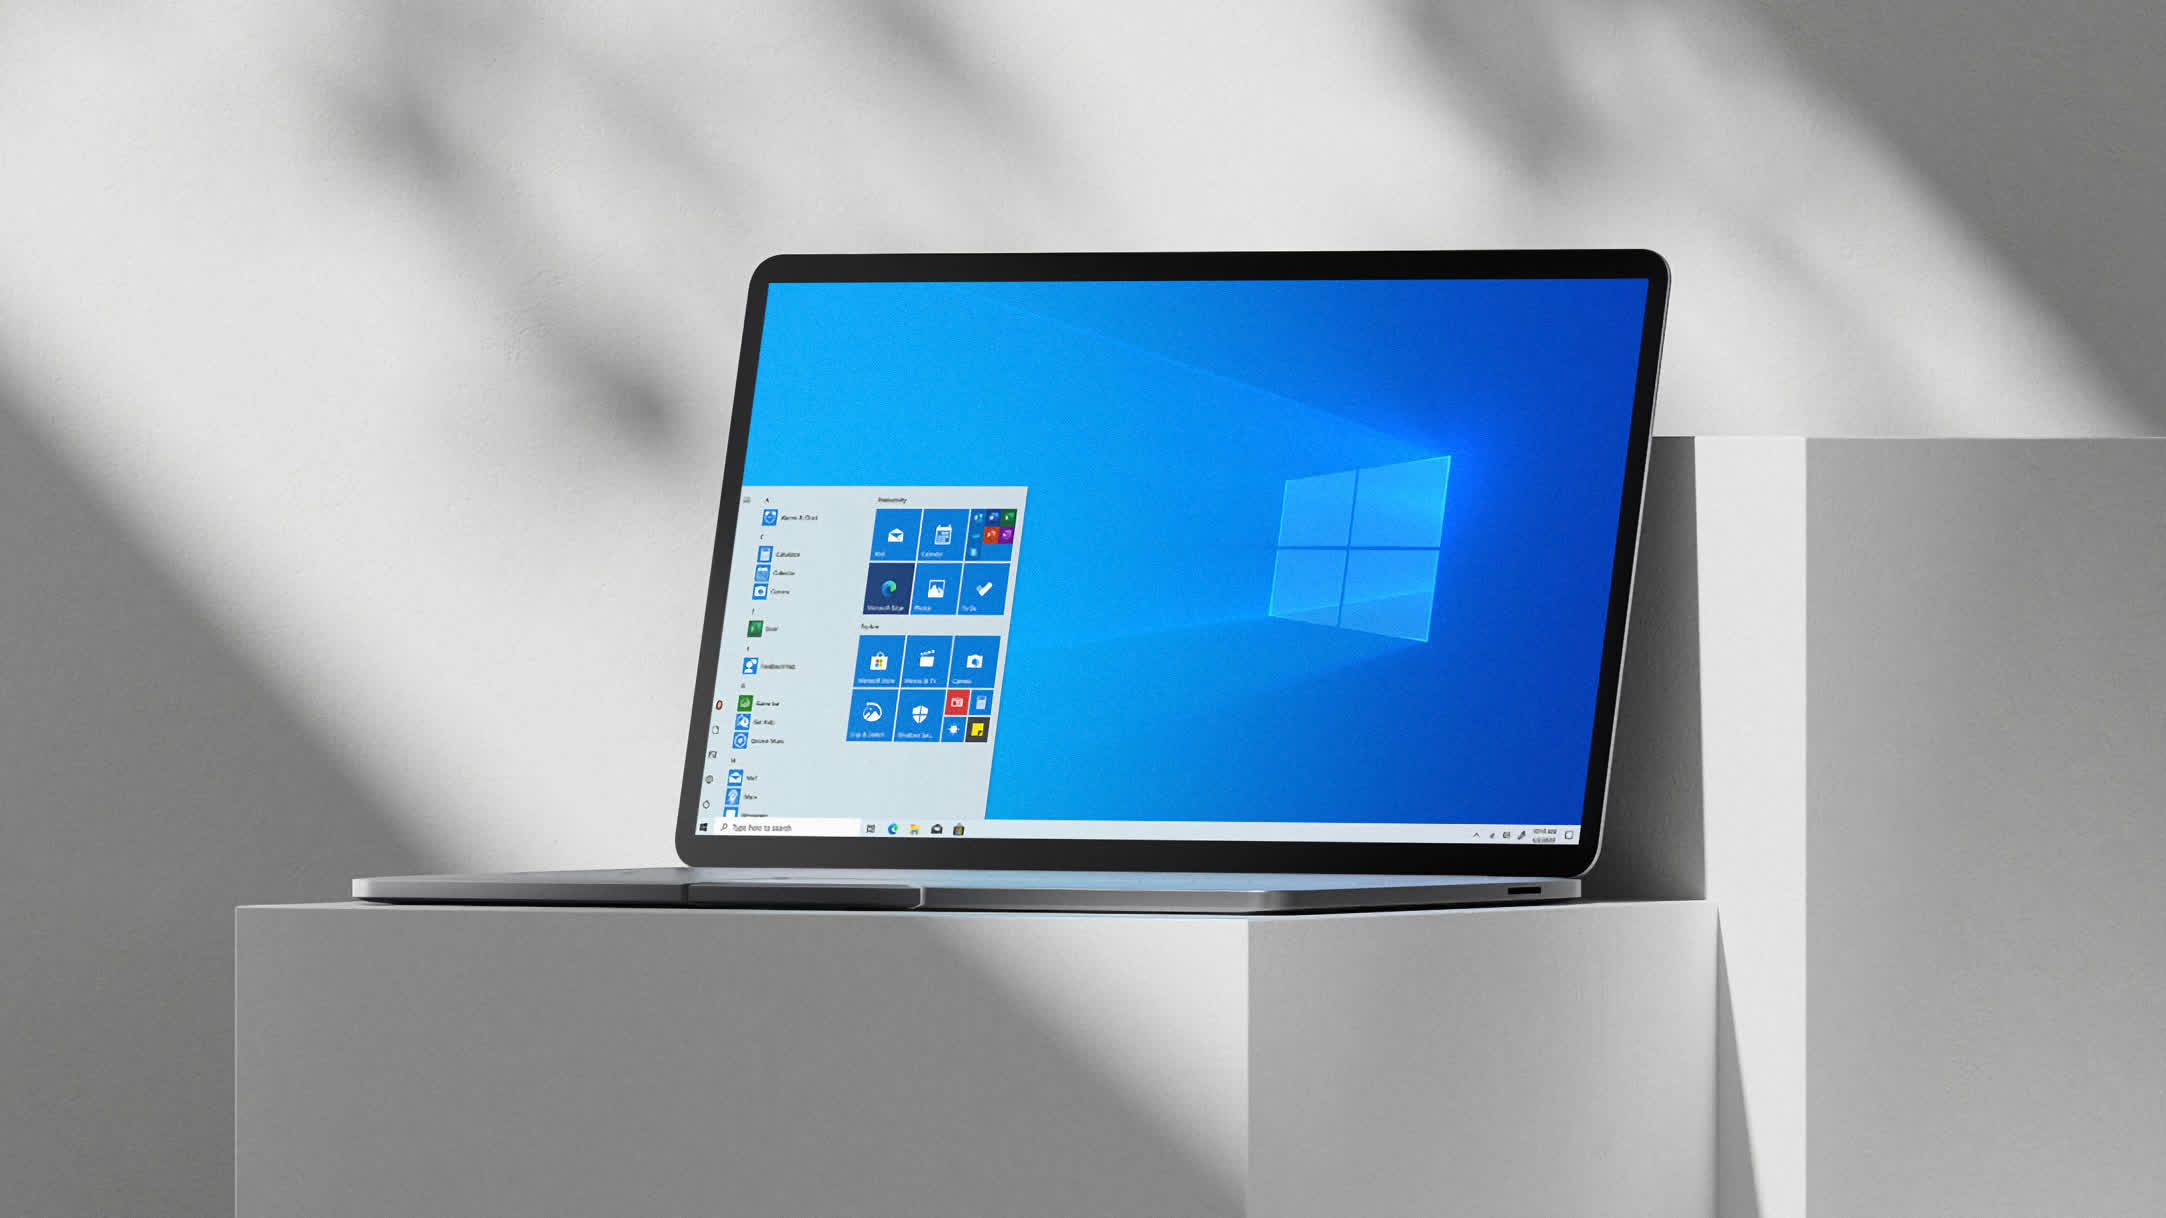 Desarrollador establece un nuevo récord al instalar Windows 10 en 104 segundos